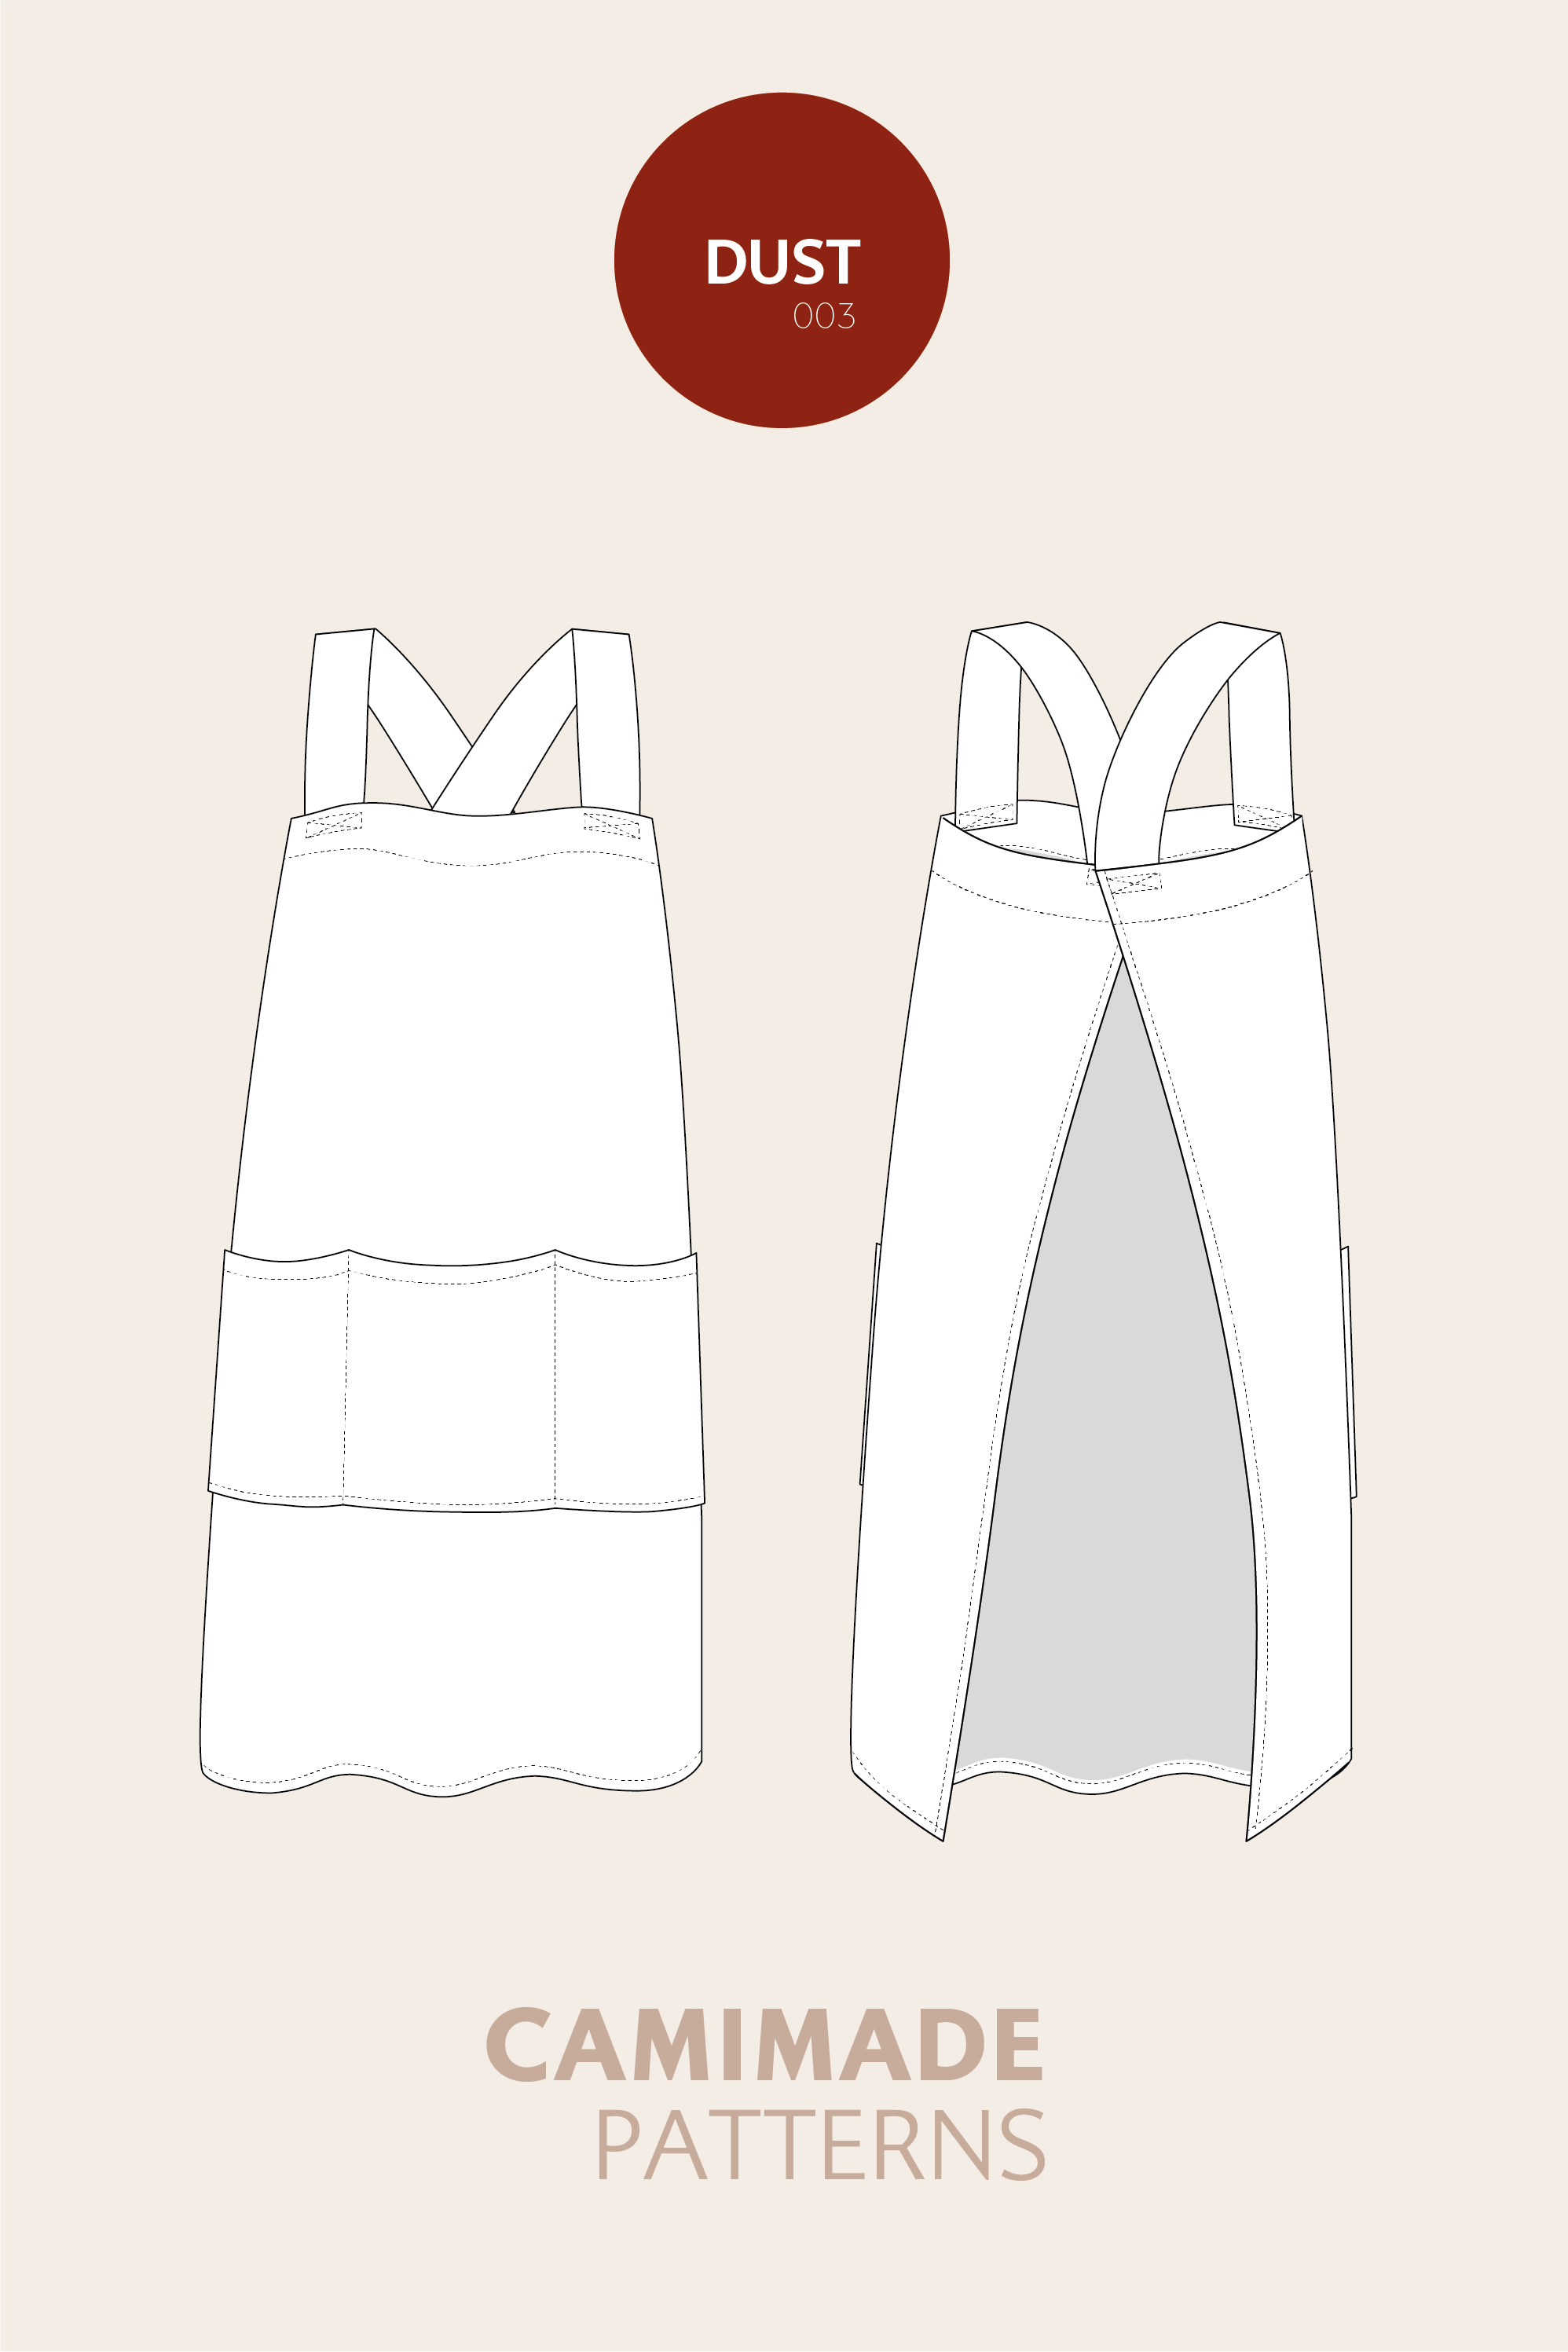 Cross-back apron pattern - DUST